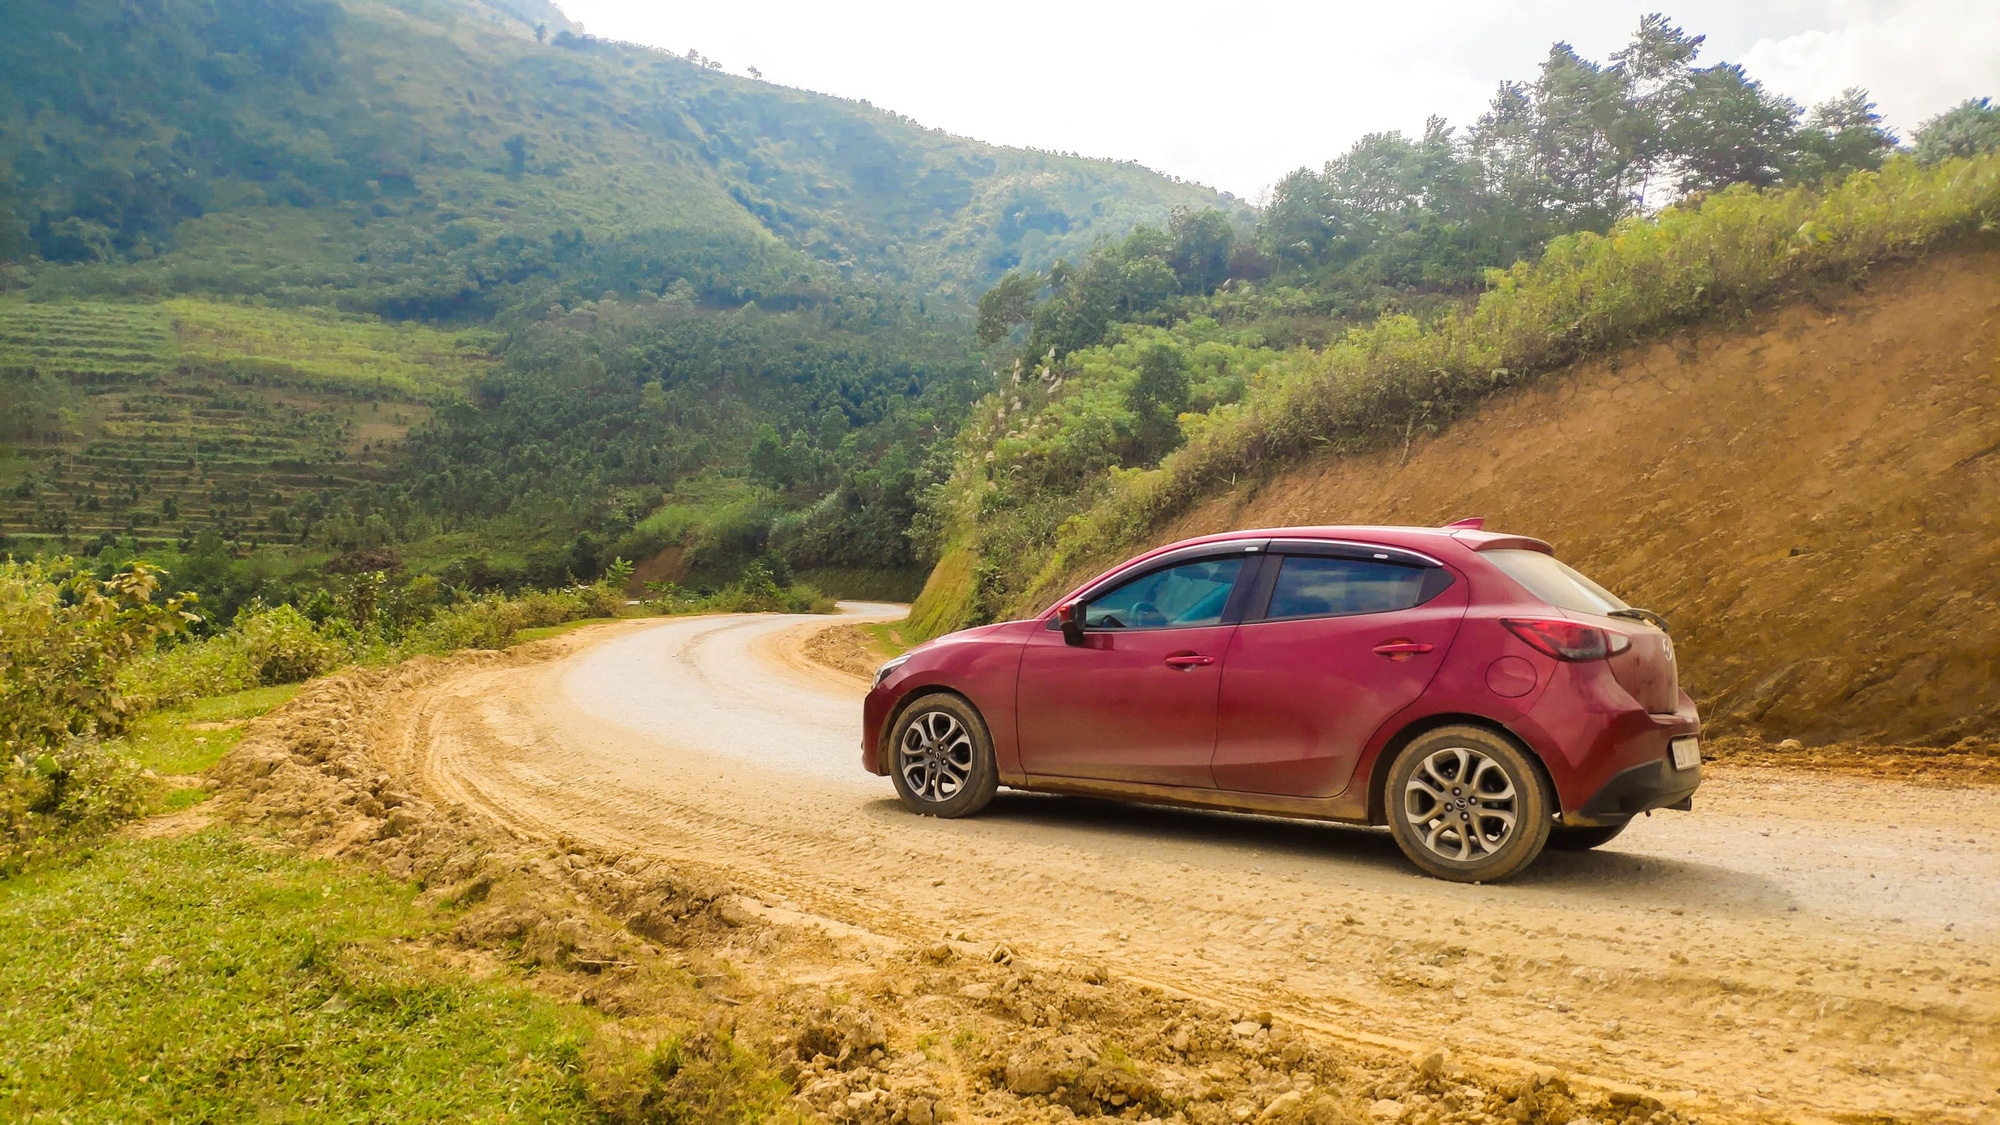 Xuyên Việt hơn 3.500km cùng Mazda2, người dùng đánh giá: Bốc, lái hay, tiết kiệm xăng nhưng chật và hơi ồn - Ảnh 4.